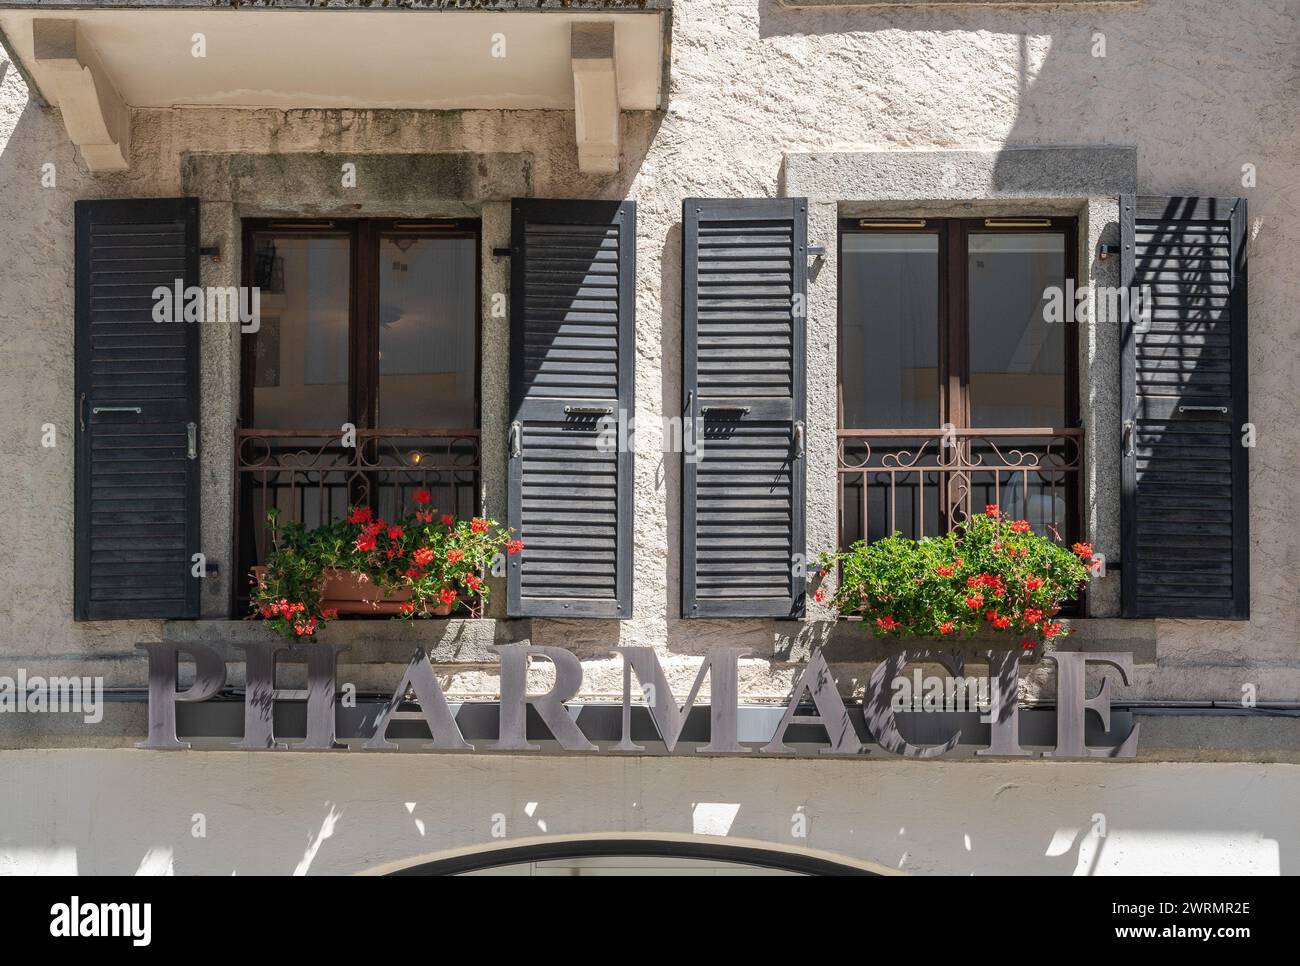 Facciata di un vecchio edificio con il segno metallico di una farmacia sotto un paio di finestre con gerani in fiore, Chamonix, Haute Savoie, Francia Foto Stock